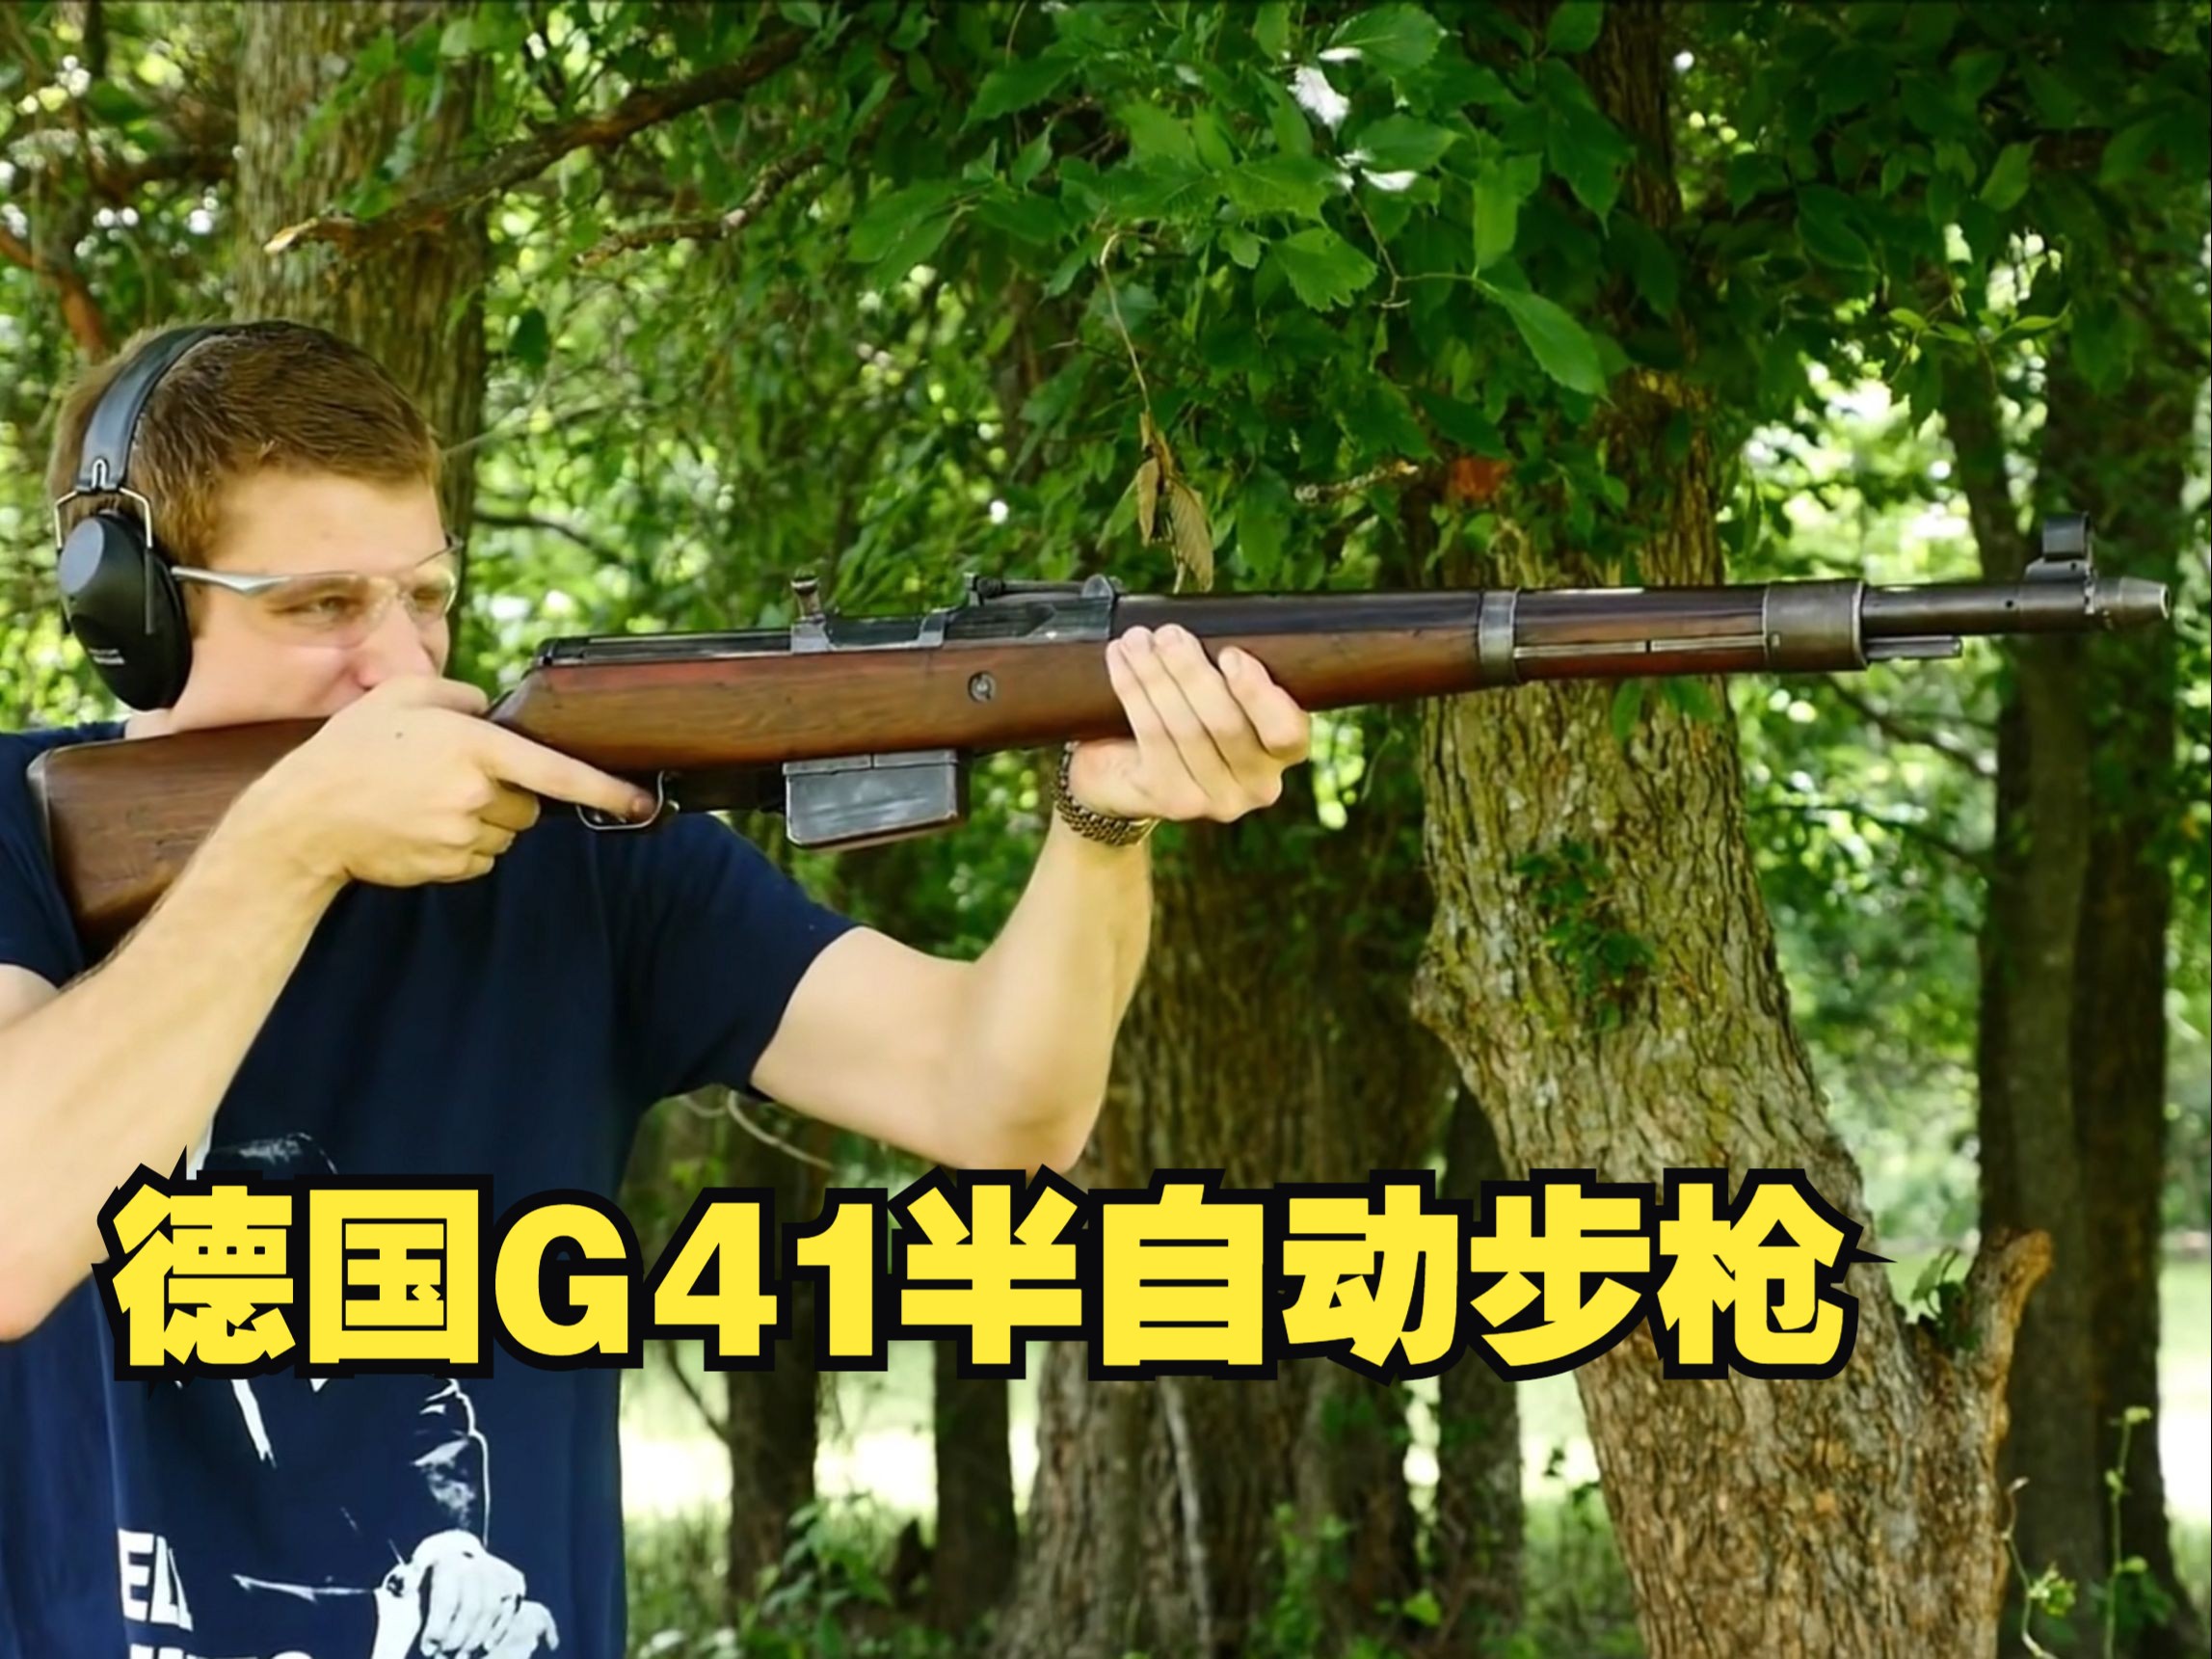 傲慢与偏见的产物 德国G41（M）/ G41（W）半自动步枪